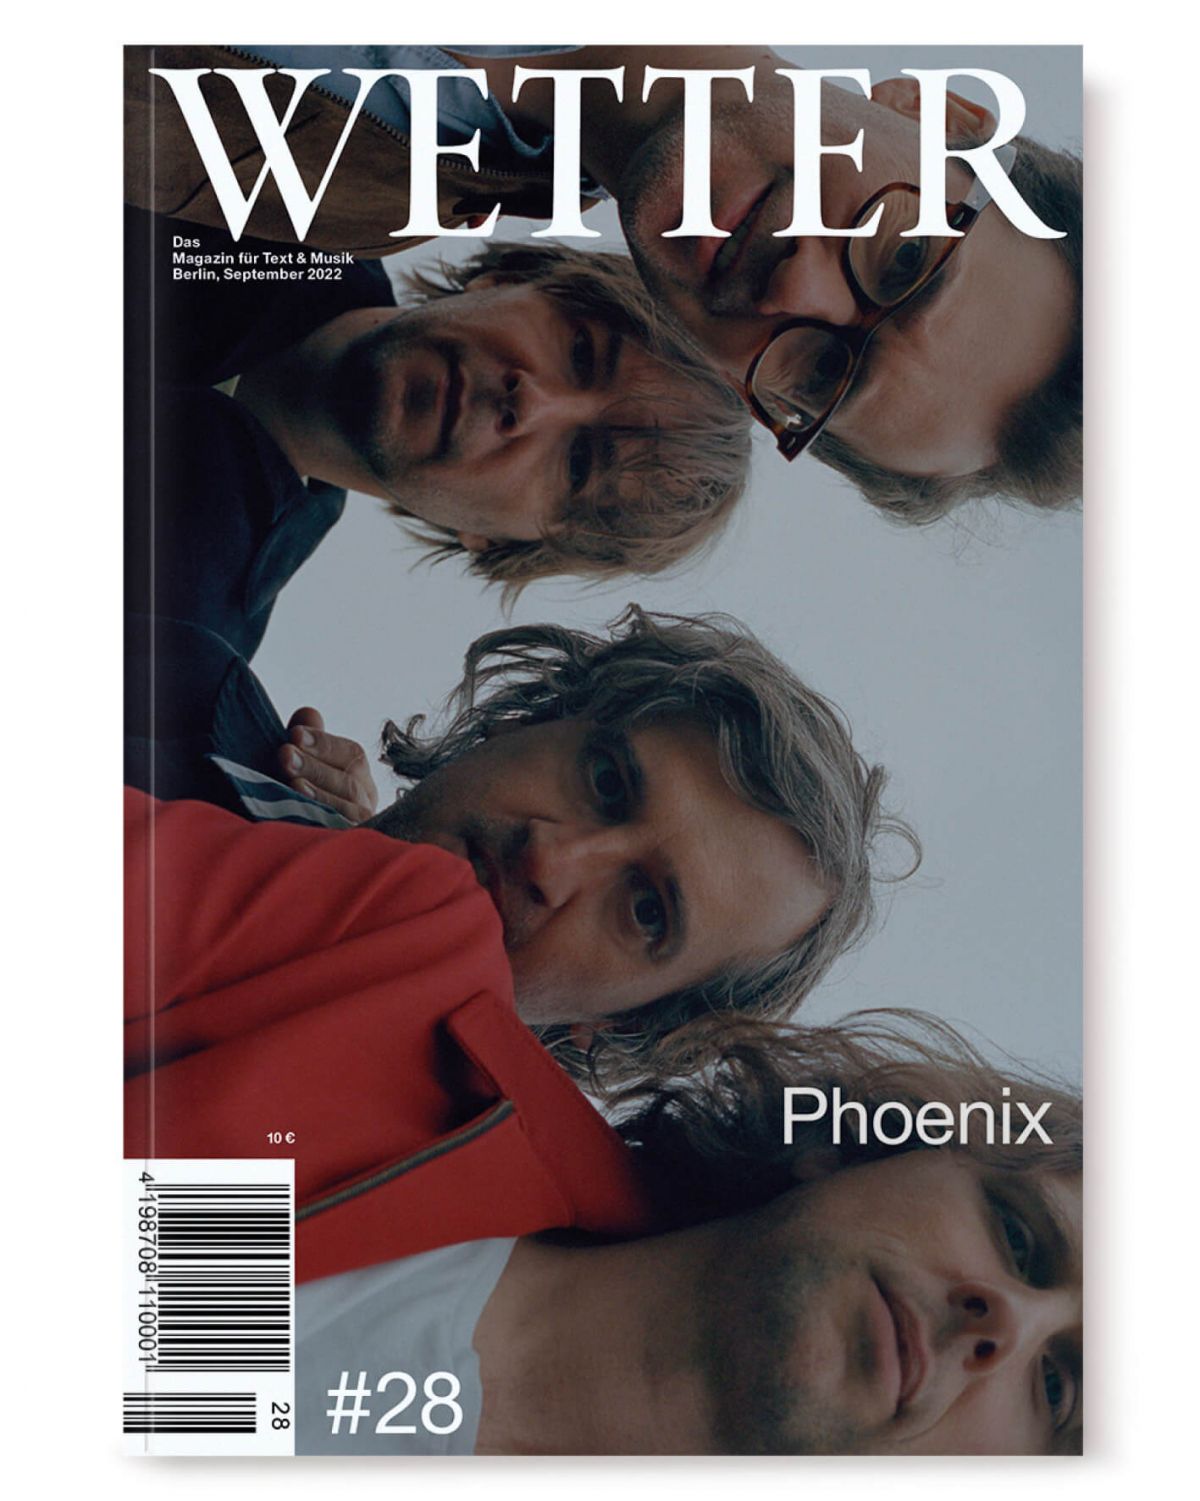 Das Wetter Magazine - Phoenix